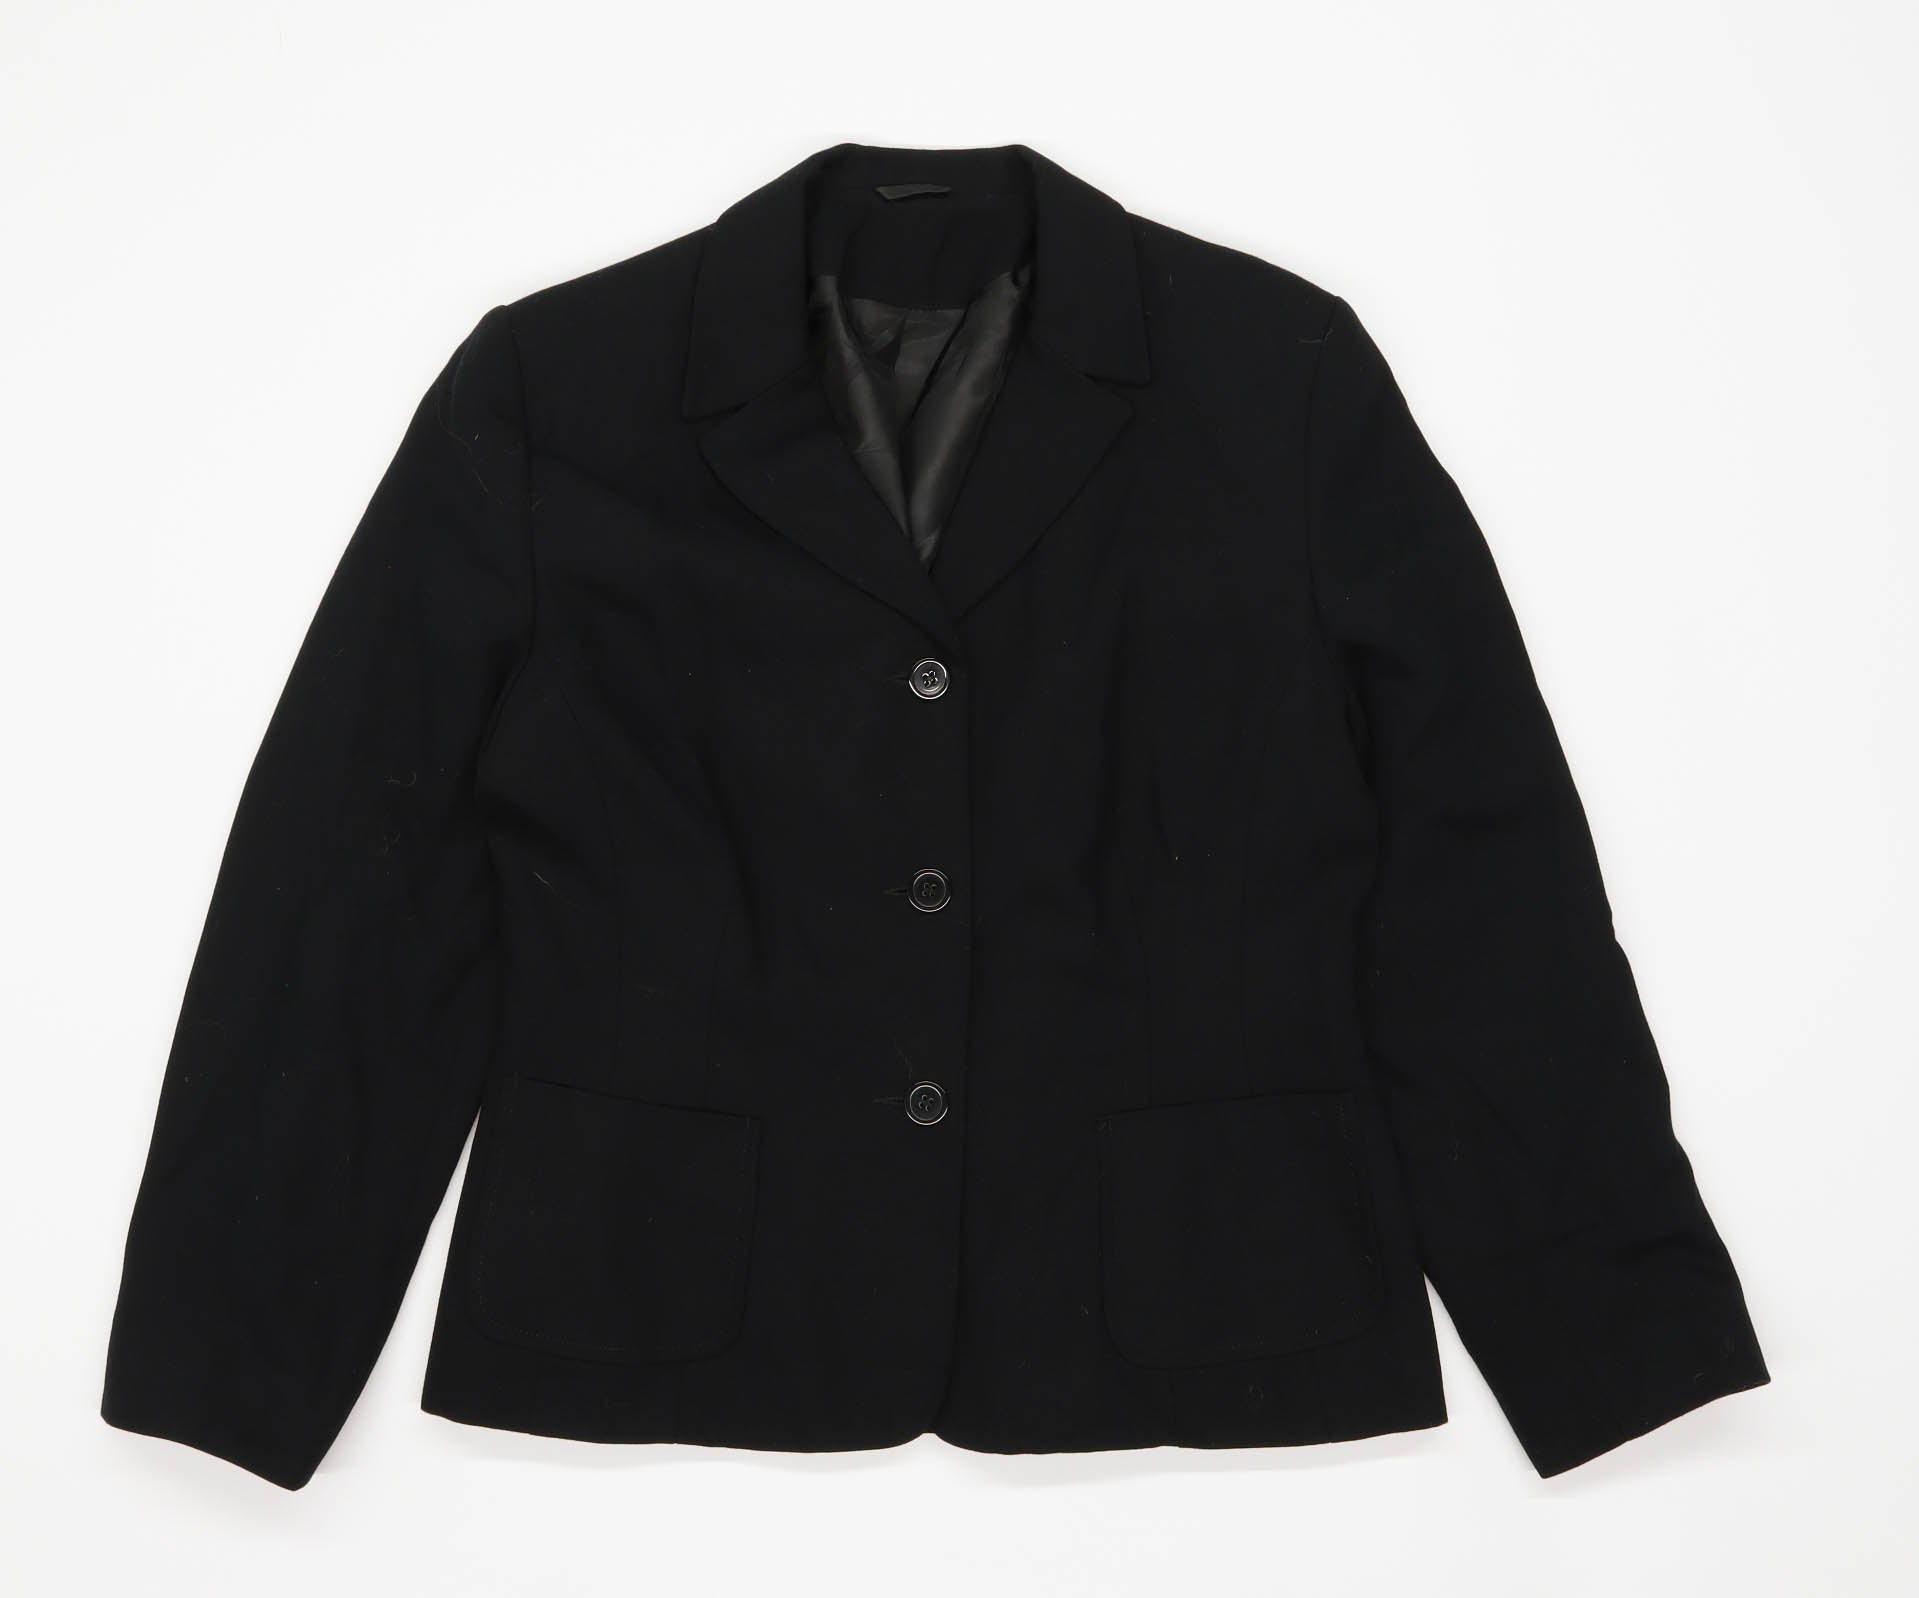 Principles Womens Size 12 Black Suit Jacket (Petite) – Preworn Ltd